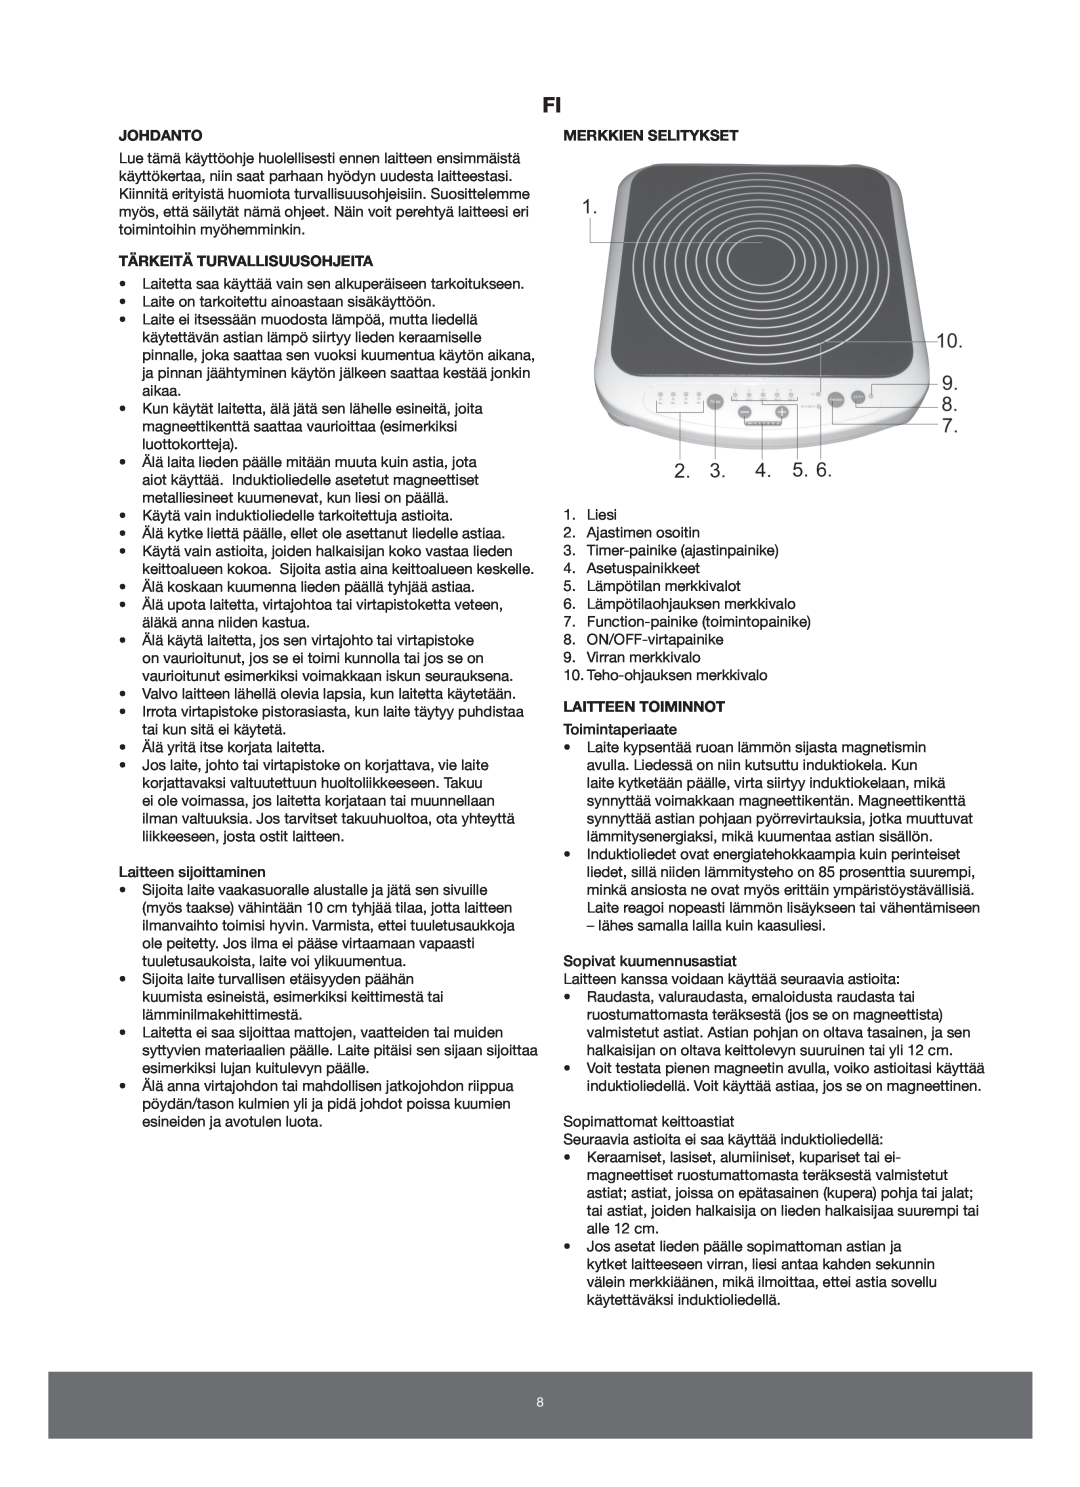 Melissa 650-005 manual Johdanto, Tärkeitä Turvallisuusohjeita, Merkkien Selitykset, Laitteen Toiminnot 